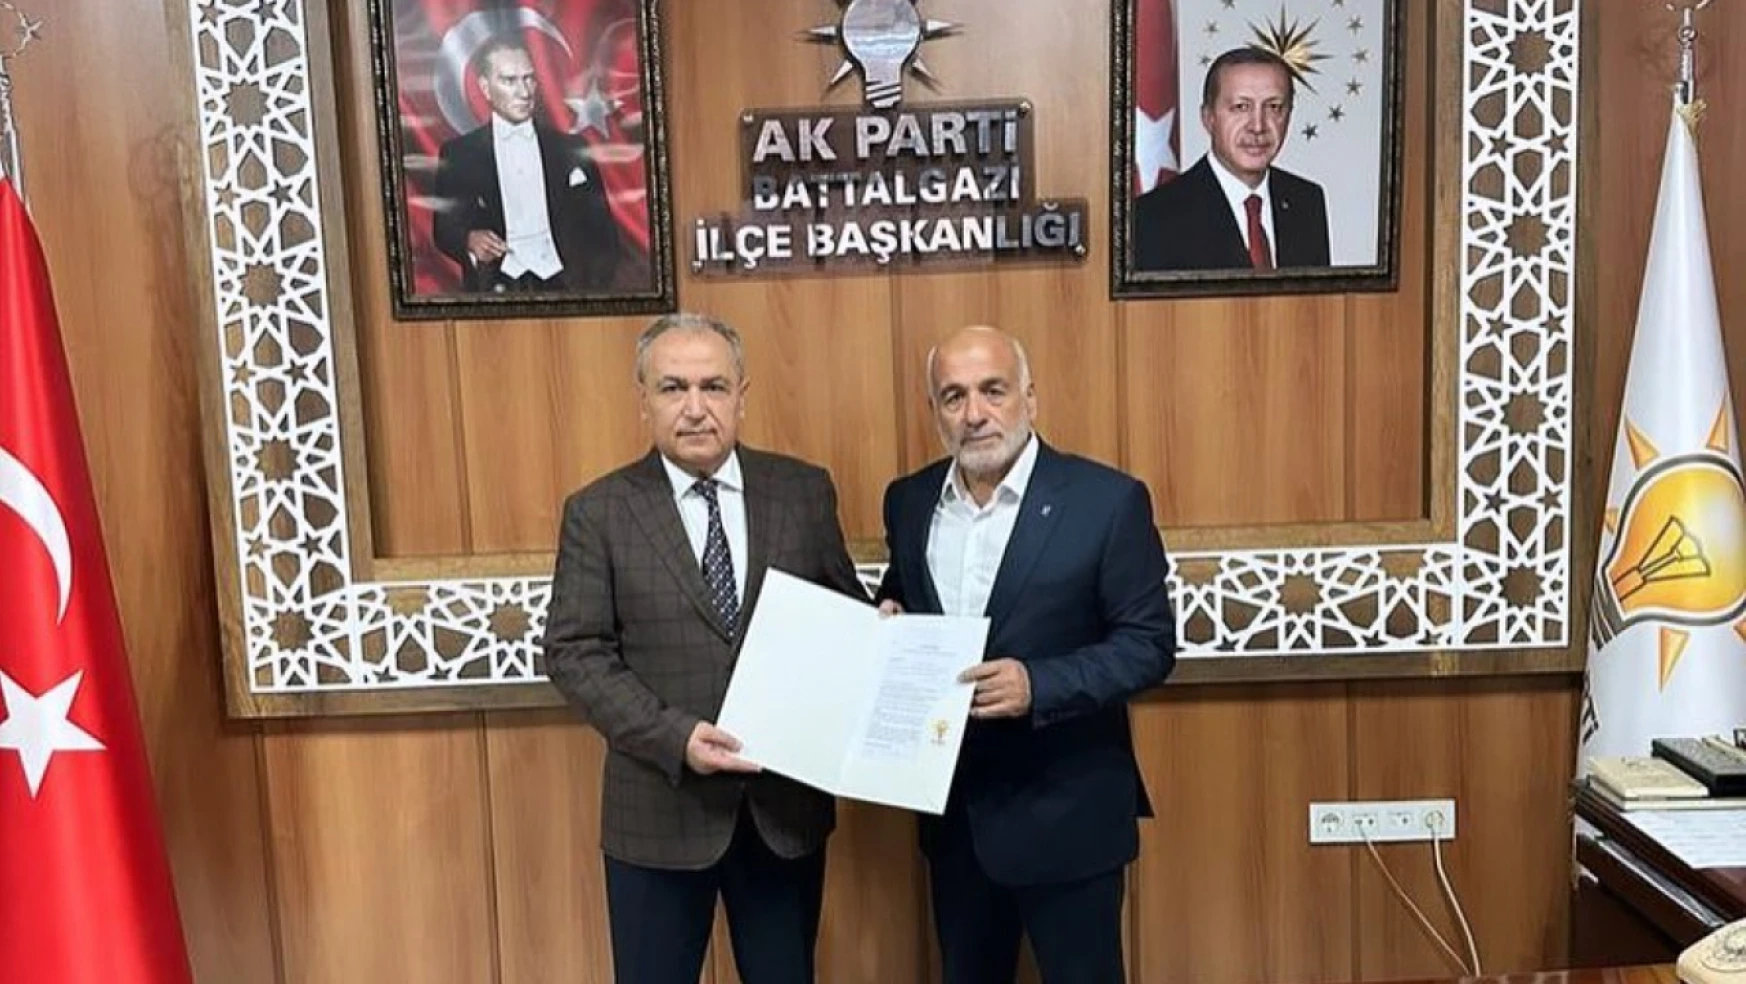 Erkoç Battalgazi Belediye Başkanlığı Aday Adaylık başvurusunu yaptı